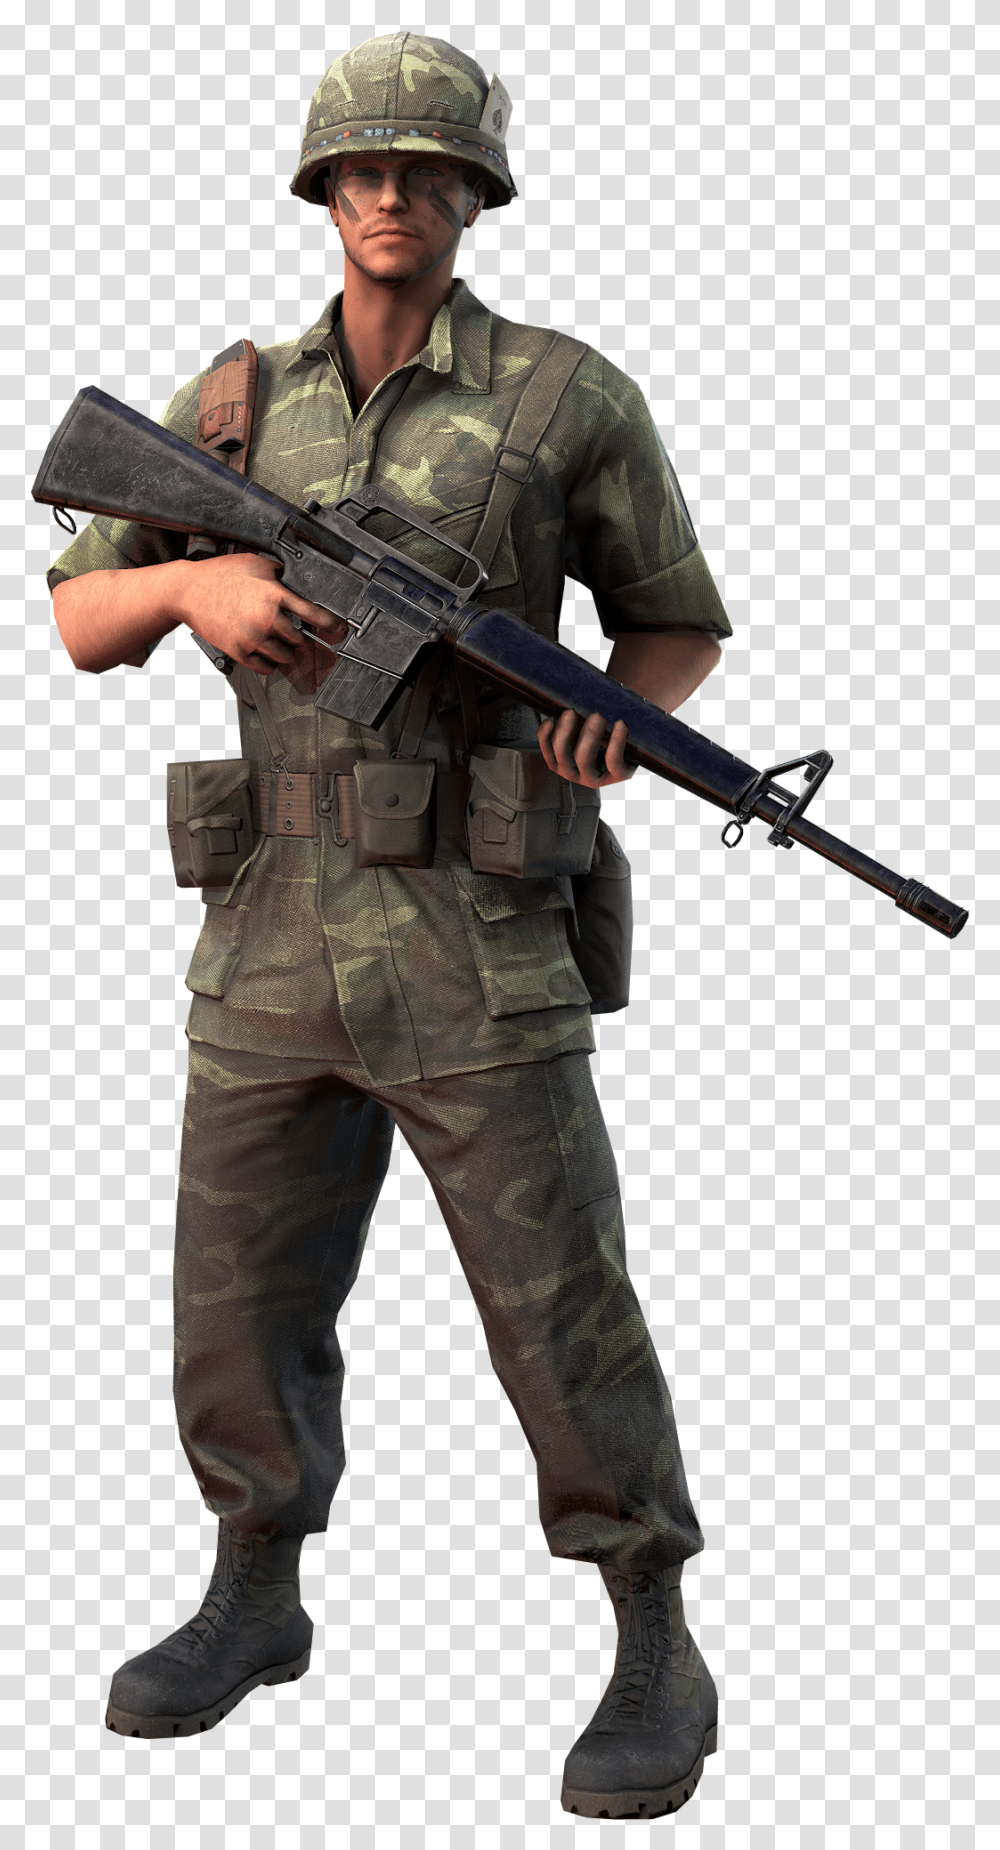 Sniper, Person, Human, Military Uniform, Gun Transparent Png